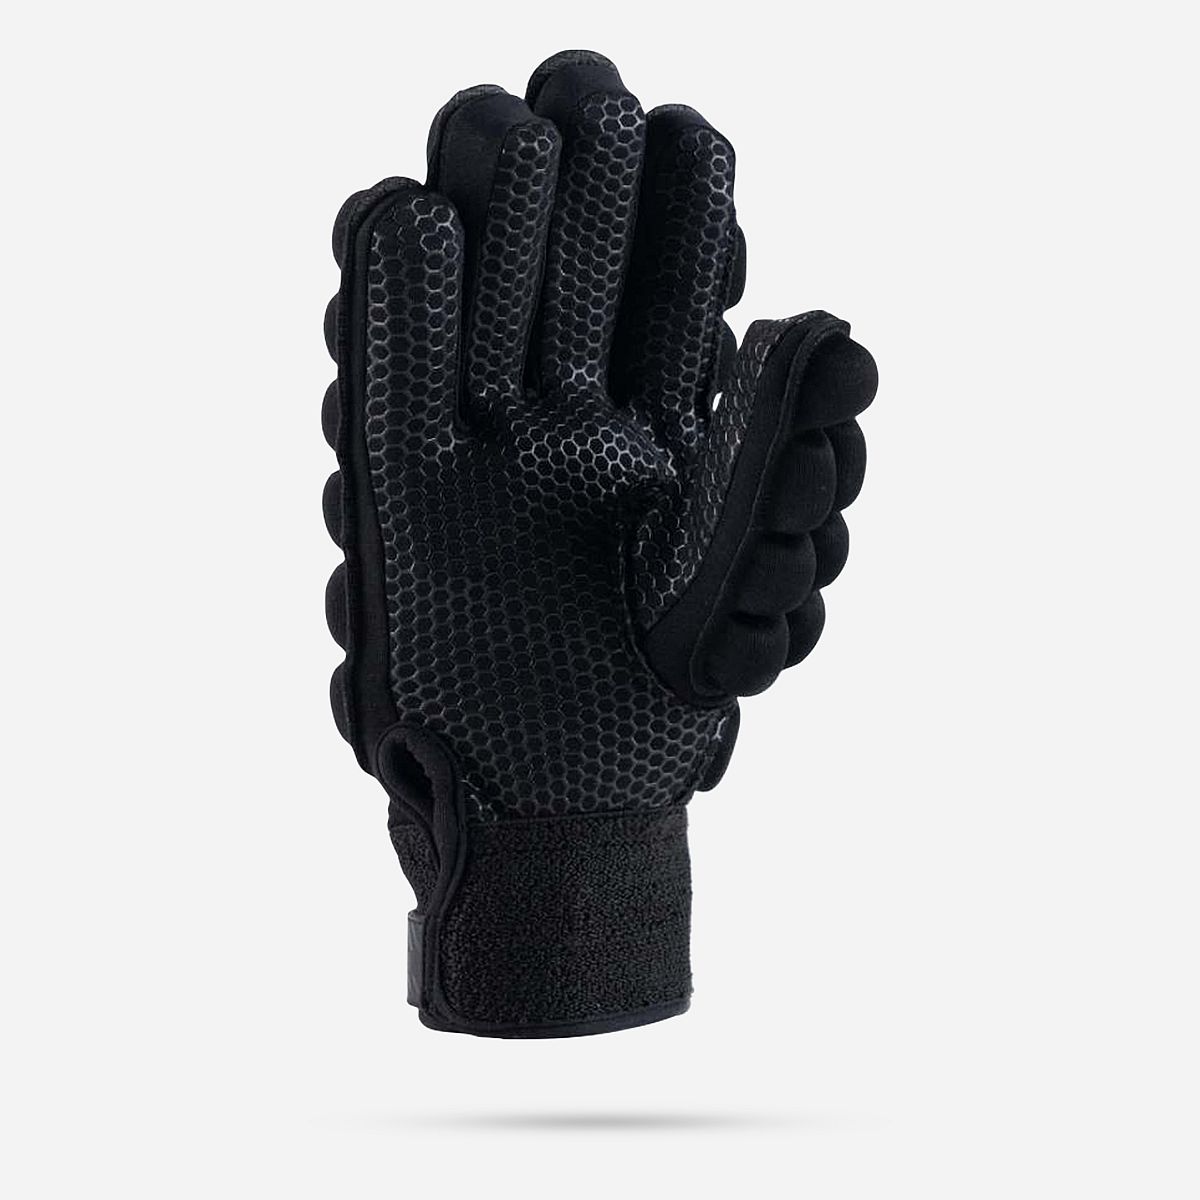 AN301026 International Pro Gloves